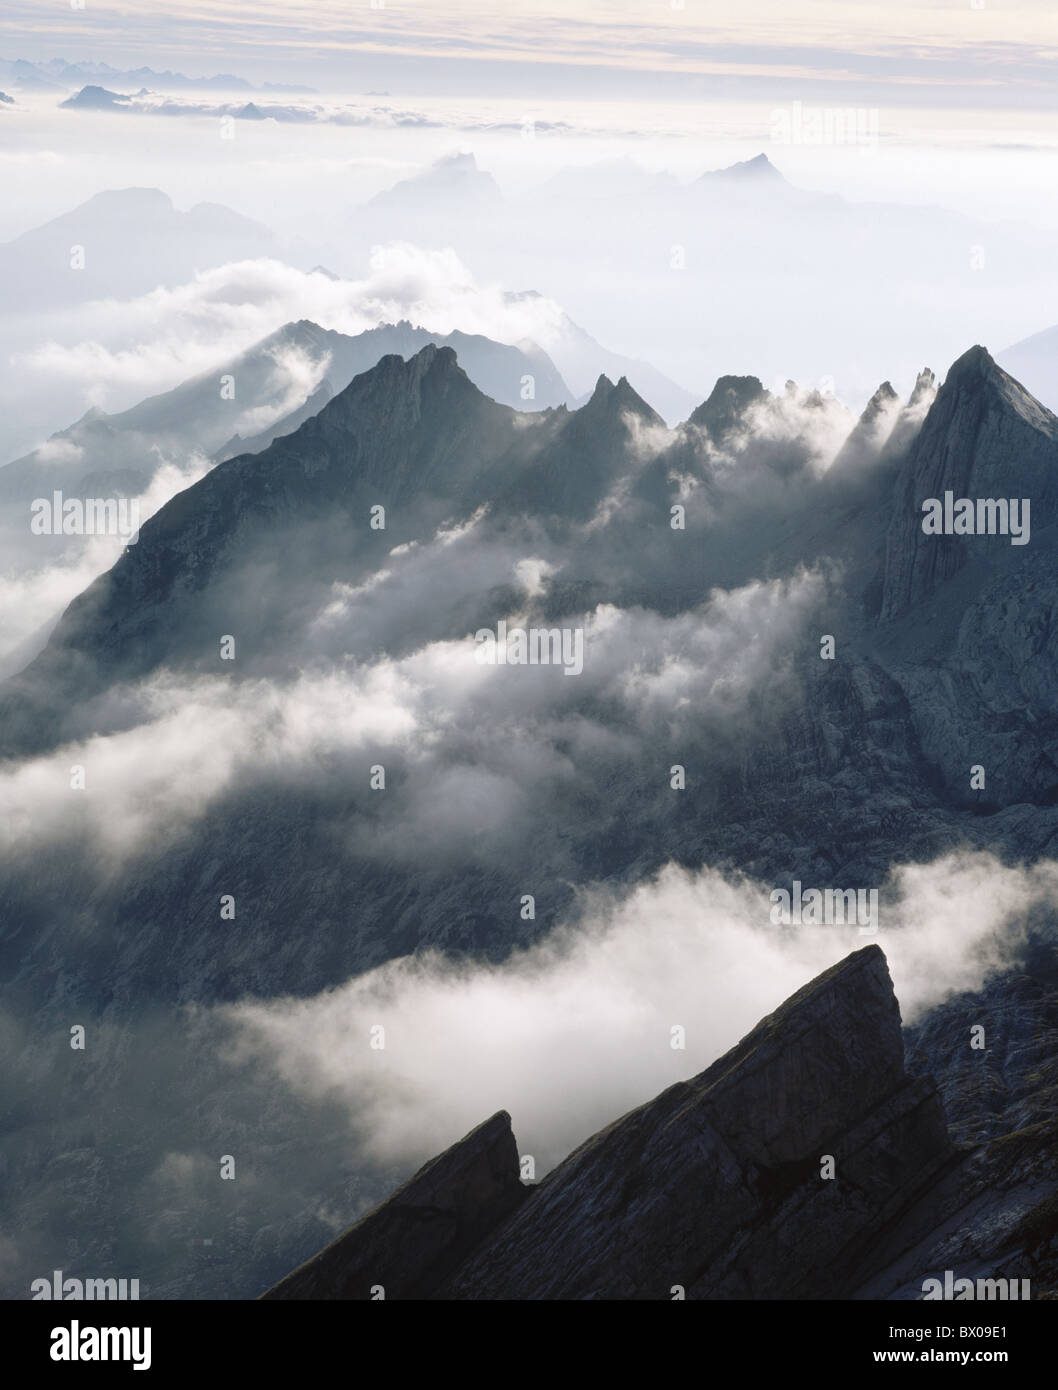 Avis de brouillard sur les montagnes de l'Alpstein Suisse Europe Suisse orientale humeur points ouest paysages Banque D'Images